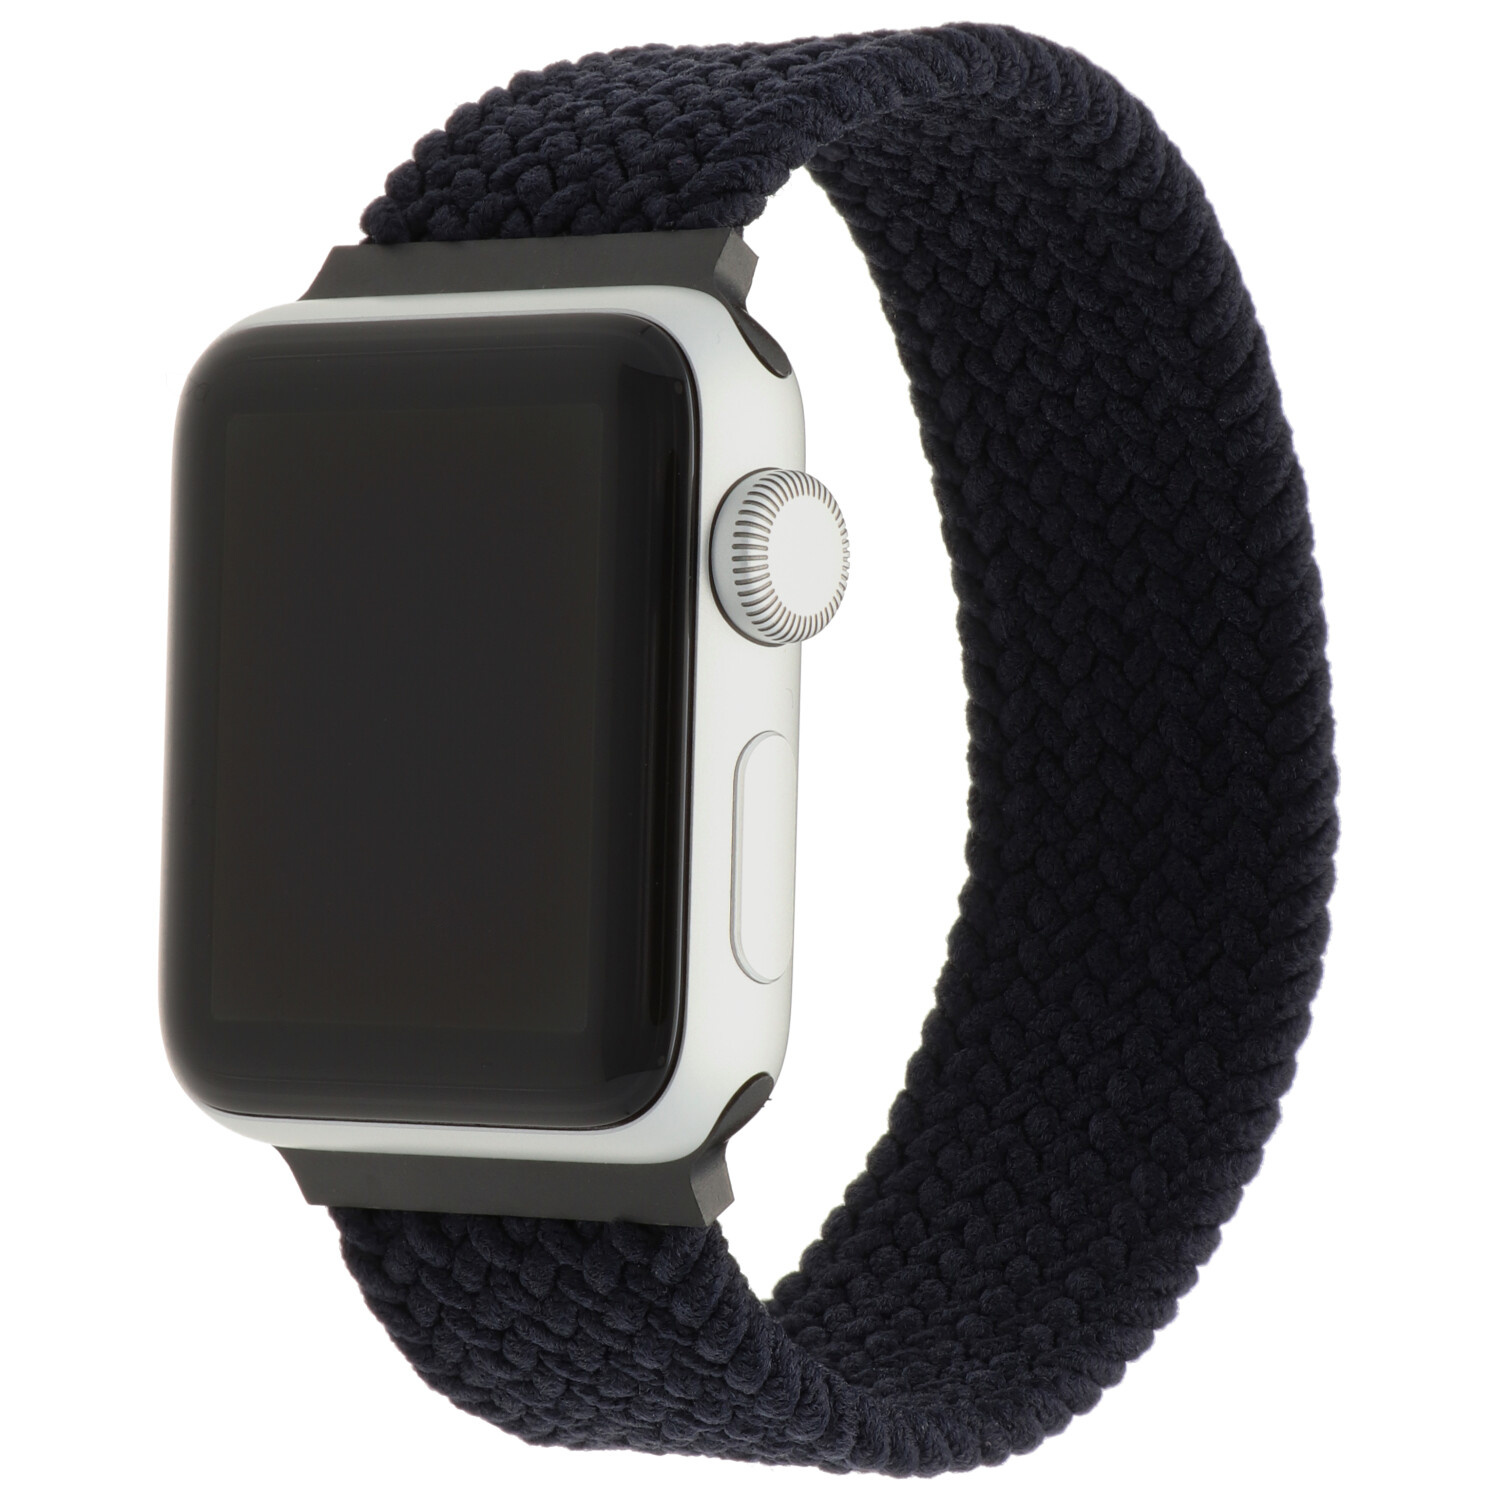 Apple watch gevlochten solo - houtskool - 123watches B.V.